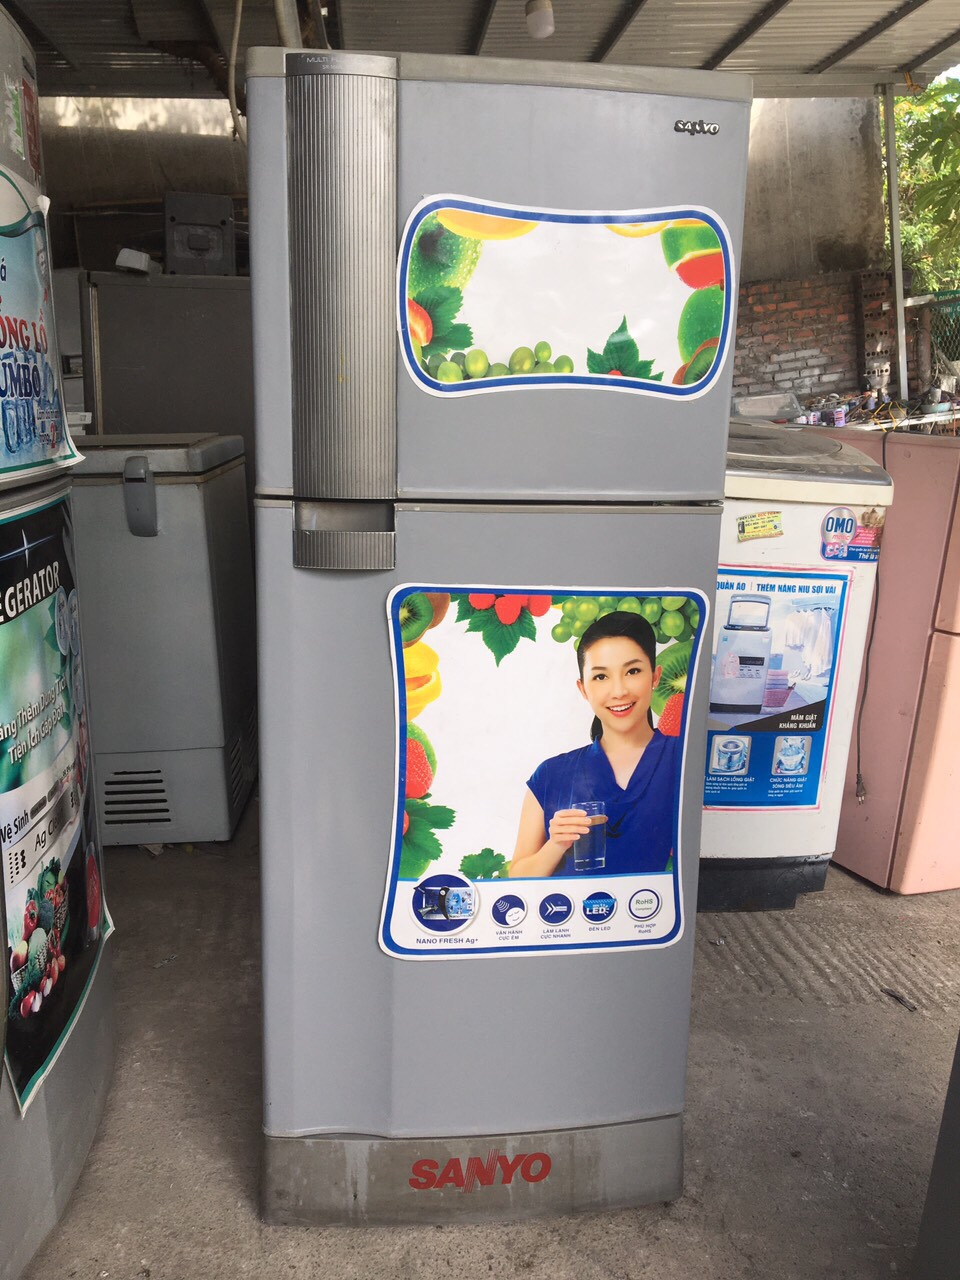 Tủ lạnh Sanyo Chính Hãng, Giá Rẻ Tháng 9/2023